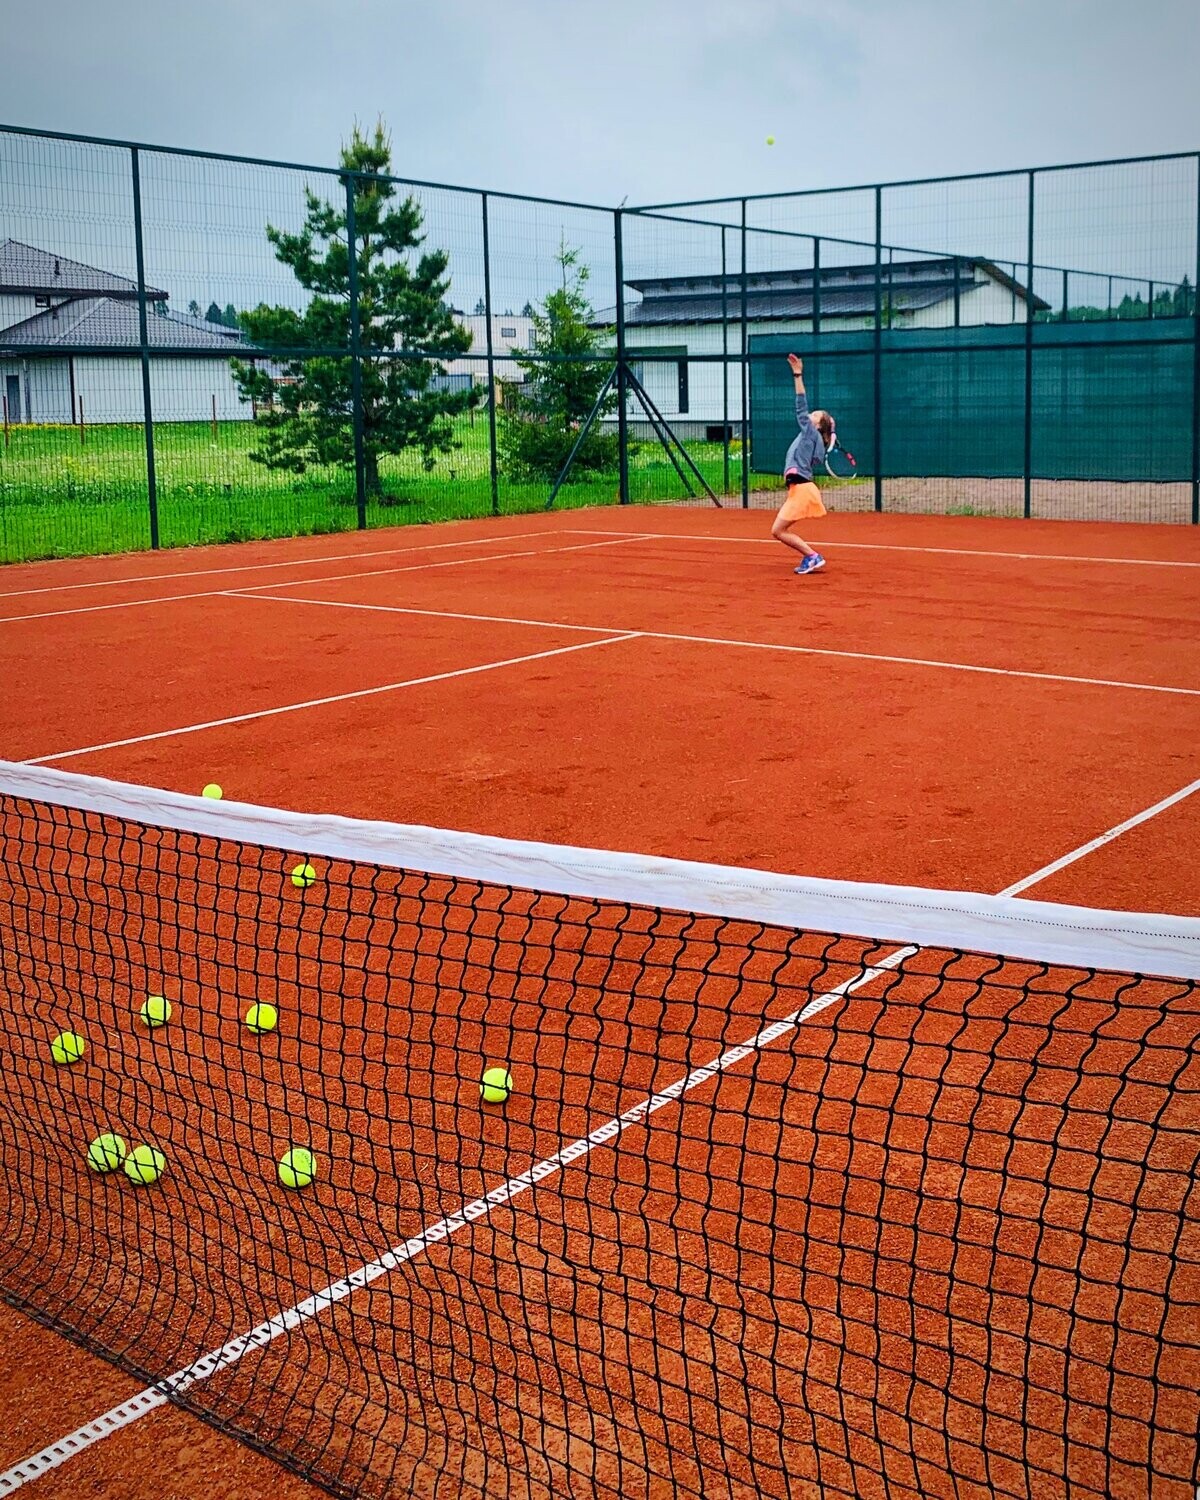 2 теннисных корта. Теннисный корт. Теннис корт. Открытый теннисный корт. Теннисная площадка.